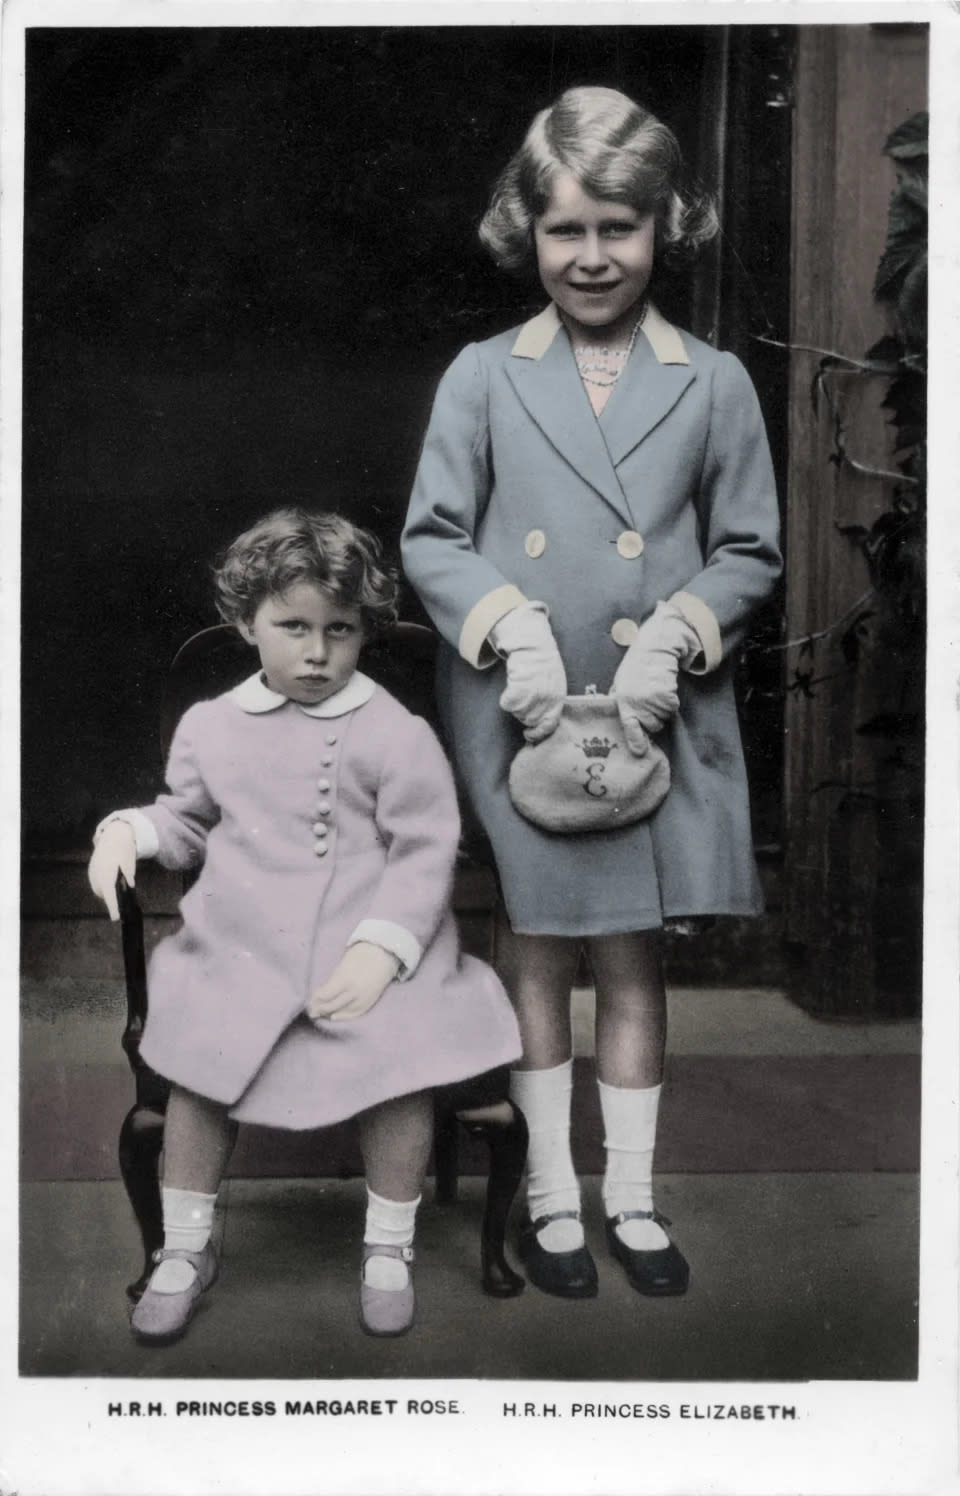 Prinzessin Elizabeth mit ihrer Schwester Margaret Rose in den 1930ern. (Bild: Culture Club/Getty Images)